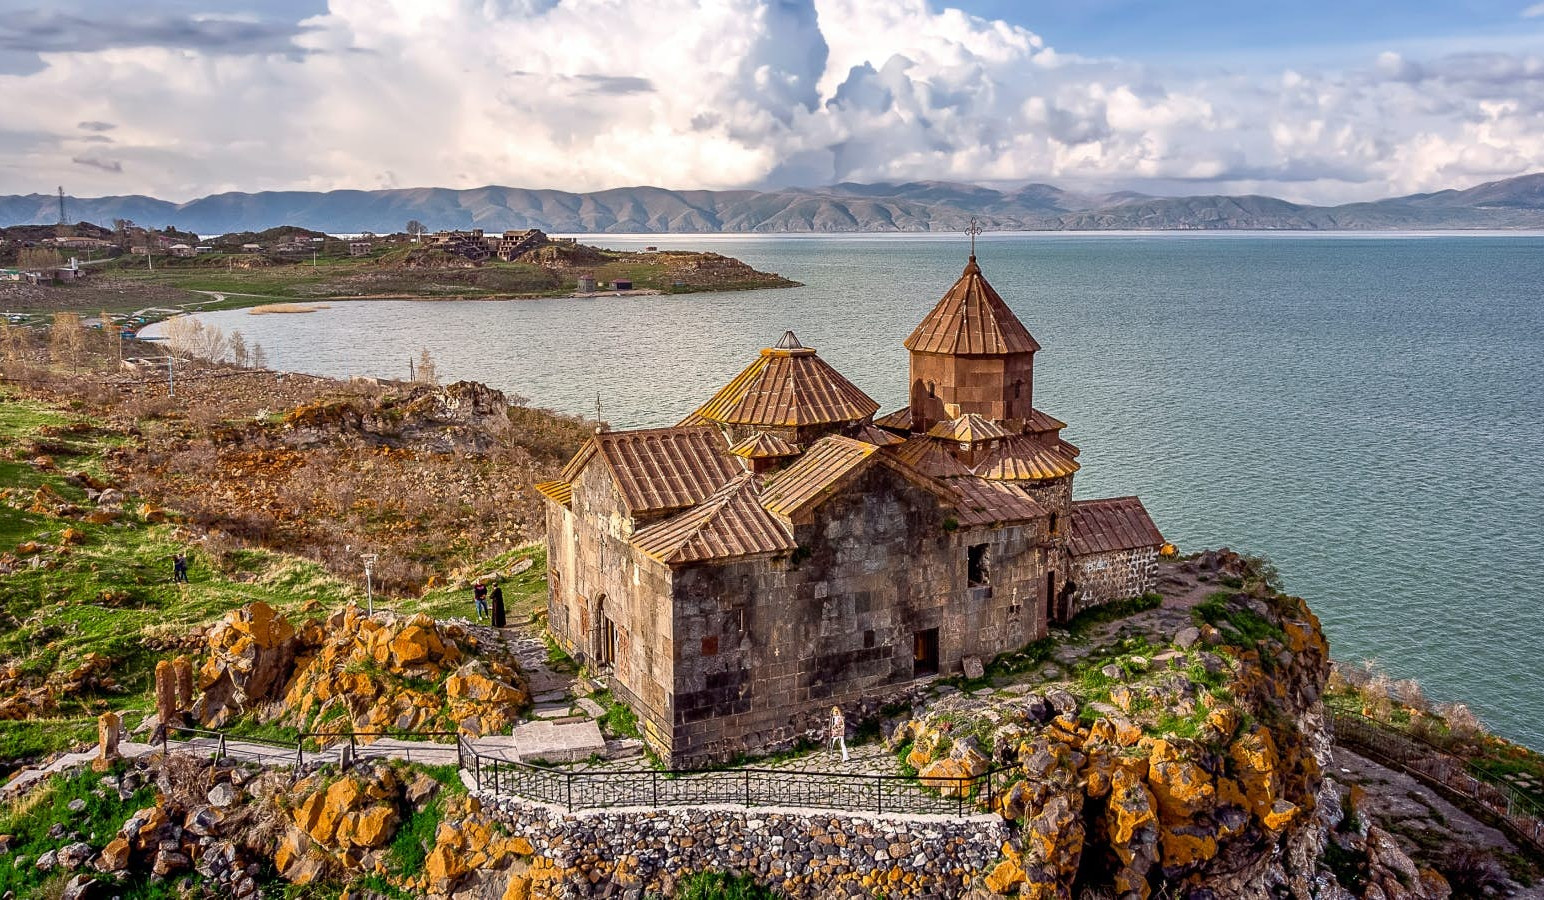 Ermənistan nüfuzlu Lonely Planet jurnalının diqqət mərkəzindədir